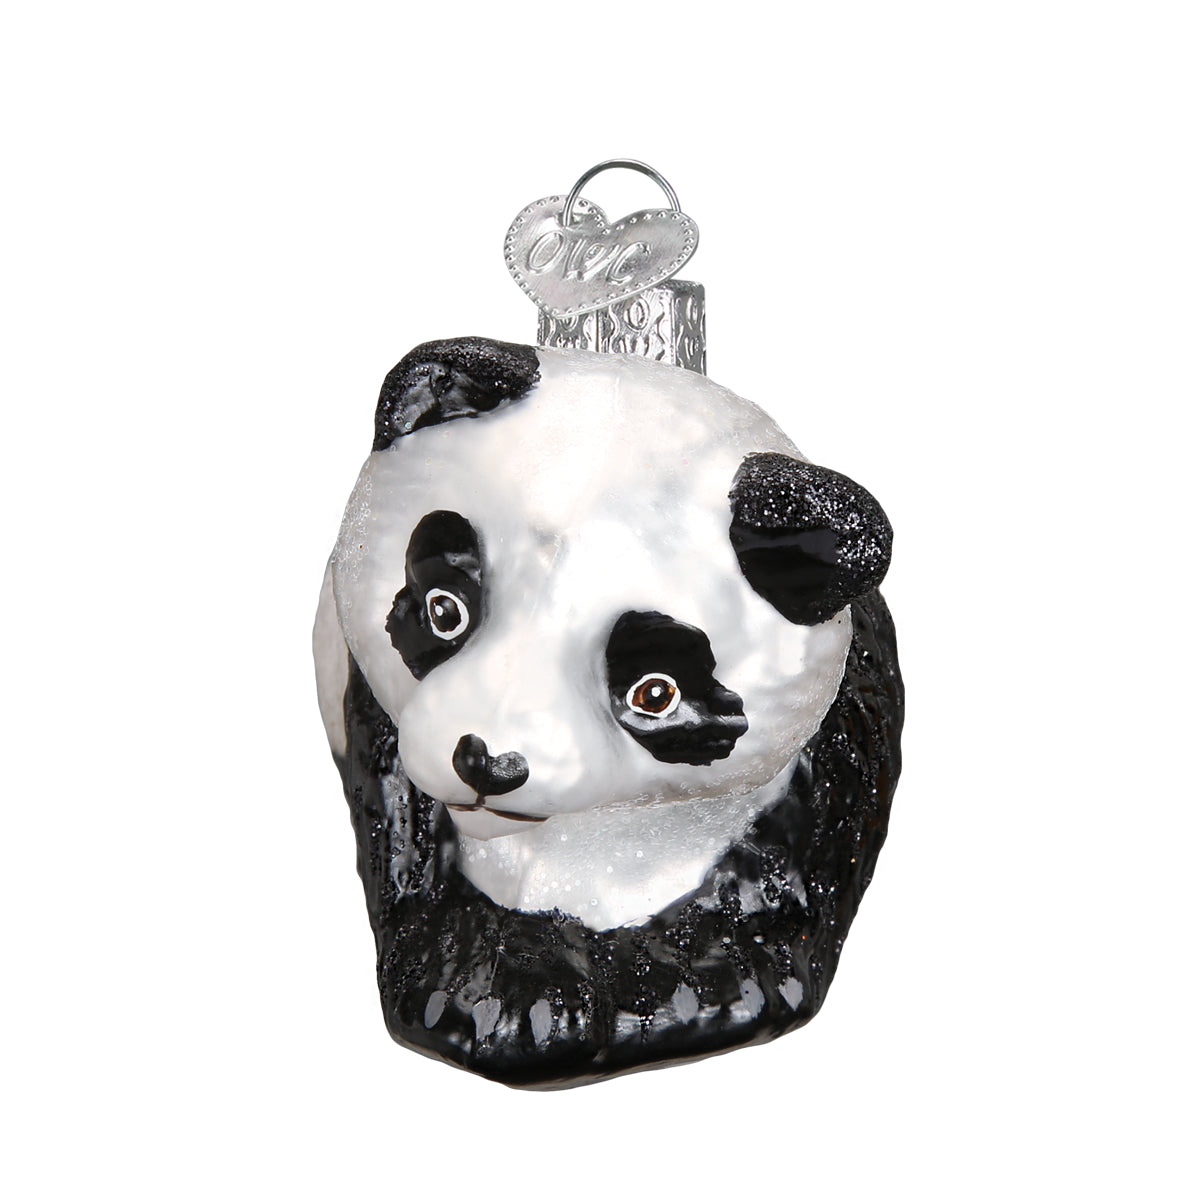 Panda Cub Ornament